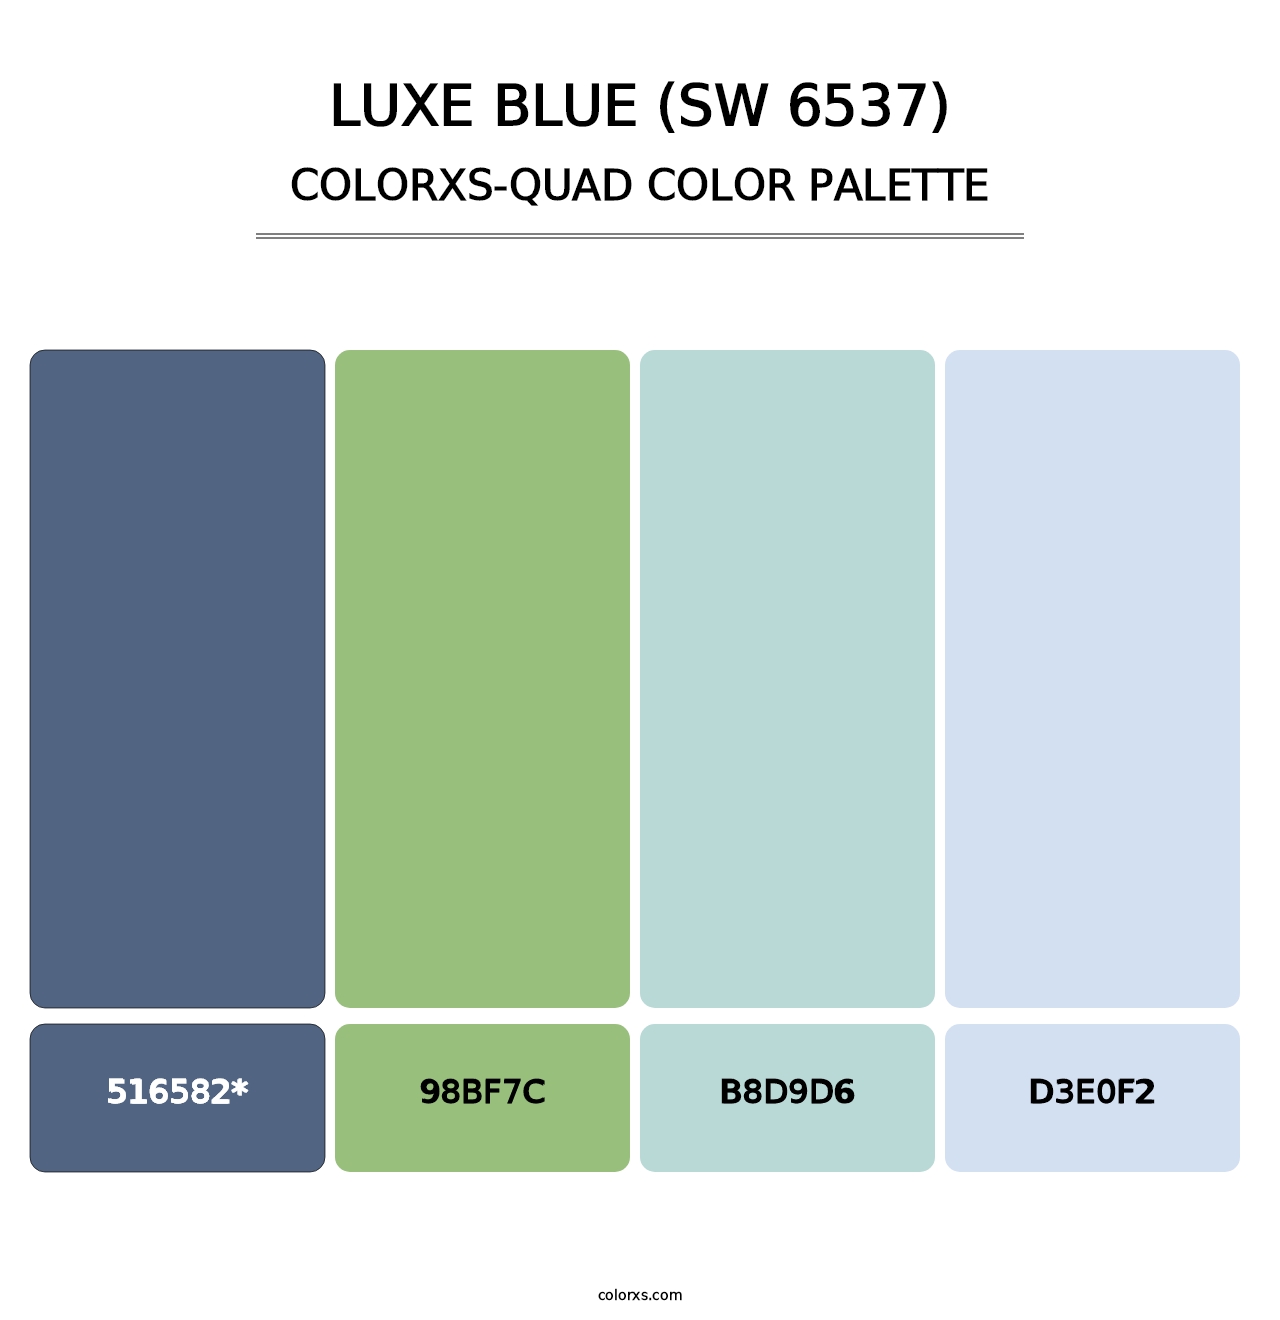 Luxe Blue (SW 6537) - Colorxs Quad Palette